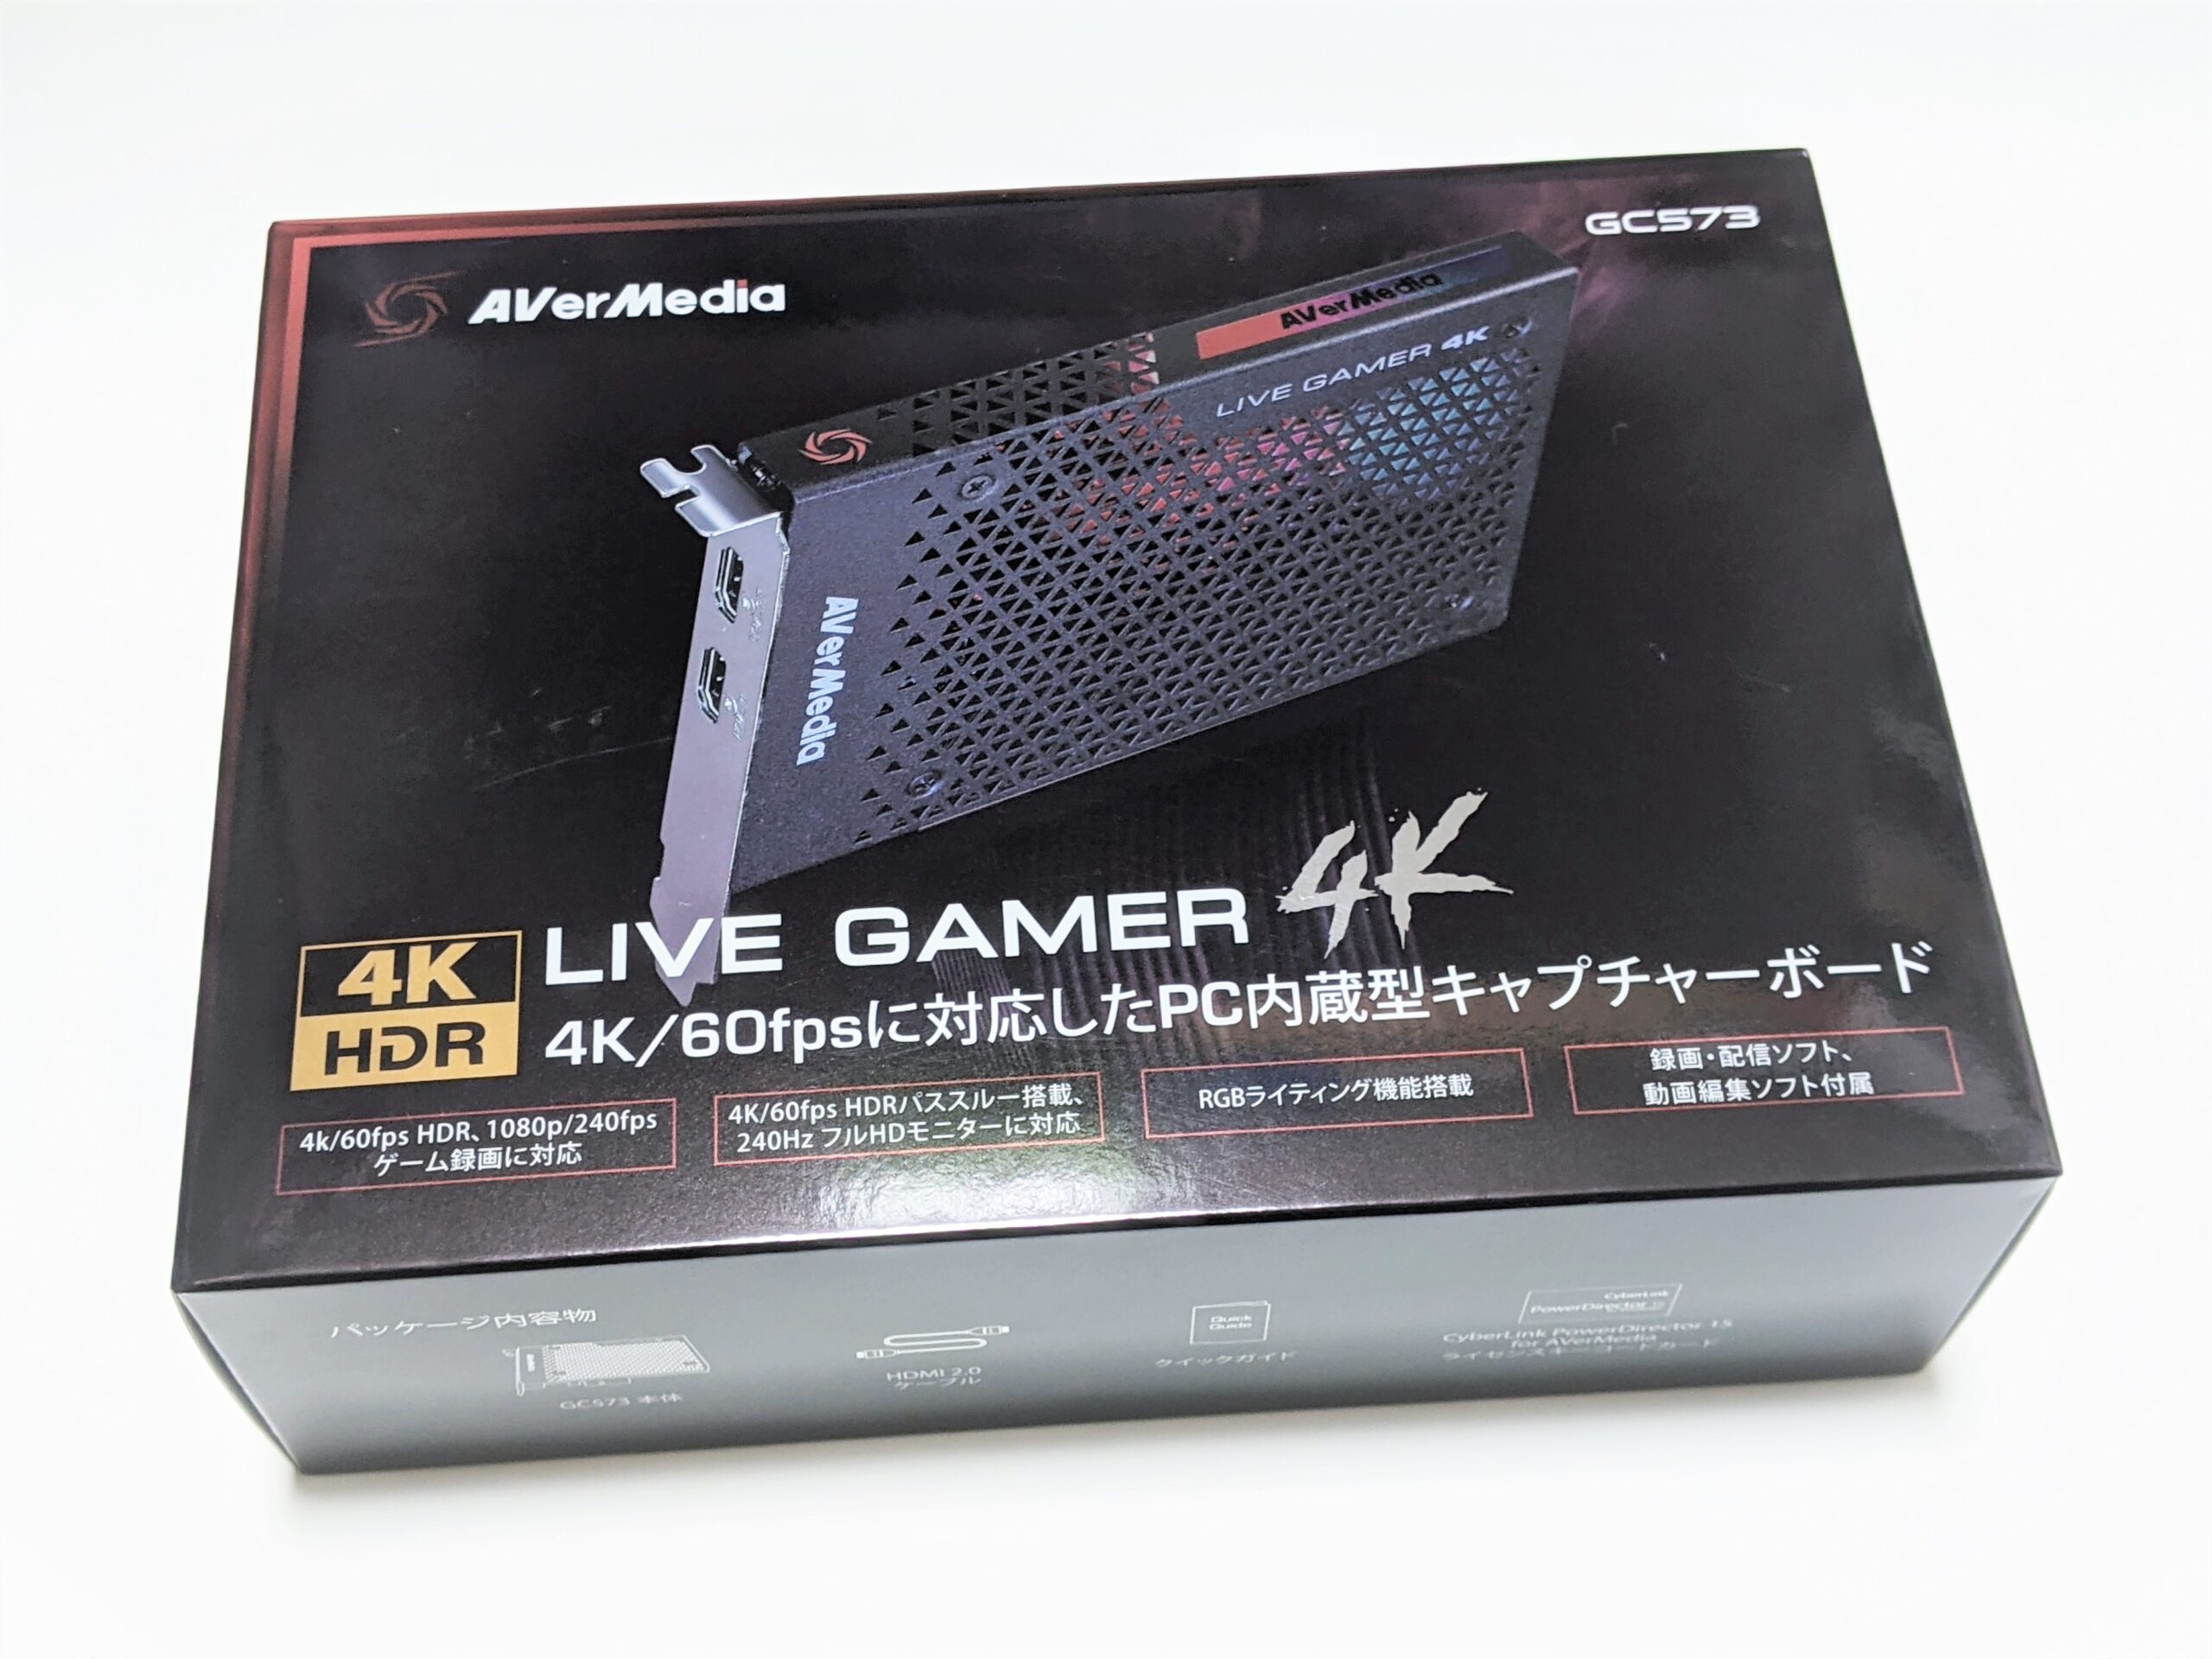 変更OK AVerMedia Live Gamer 4K GC573 キャプチャーボード 通販